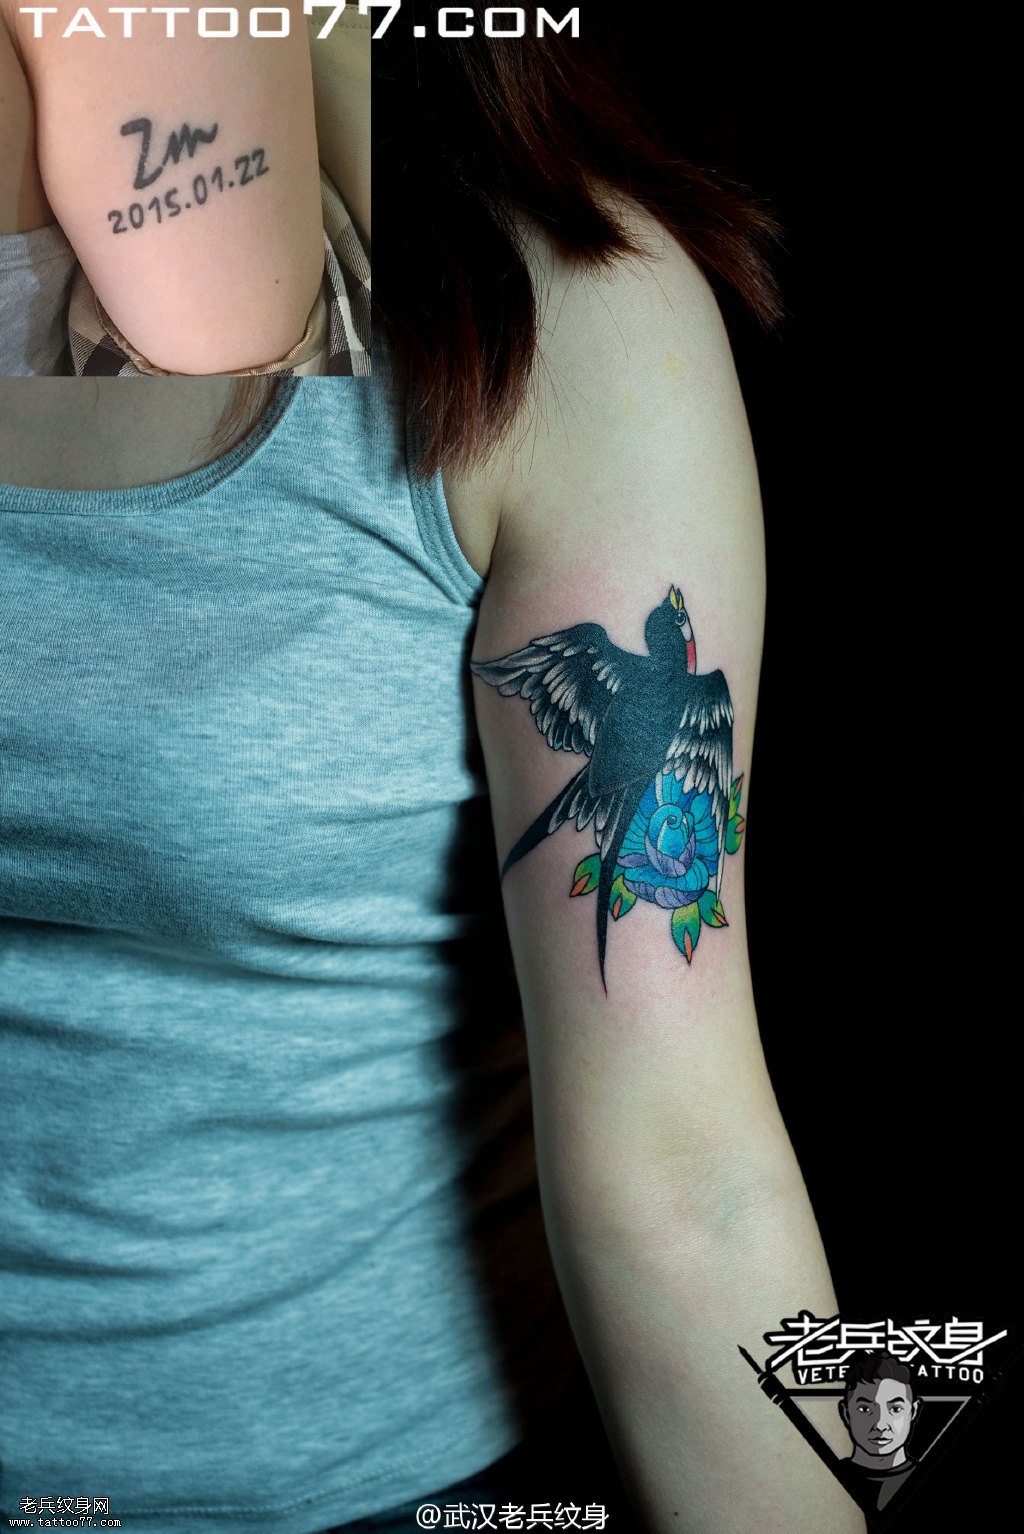 手臂内侧燕子纹身图案作品遮盖旧纹身